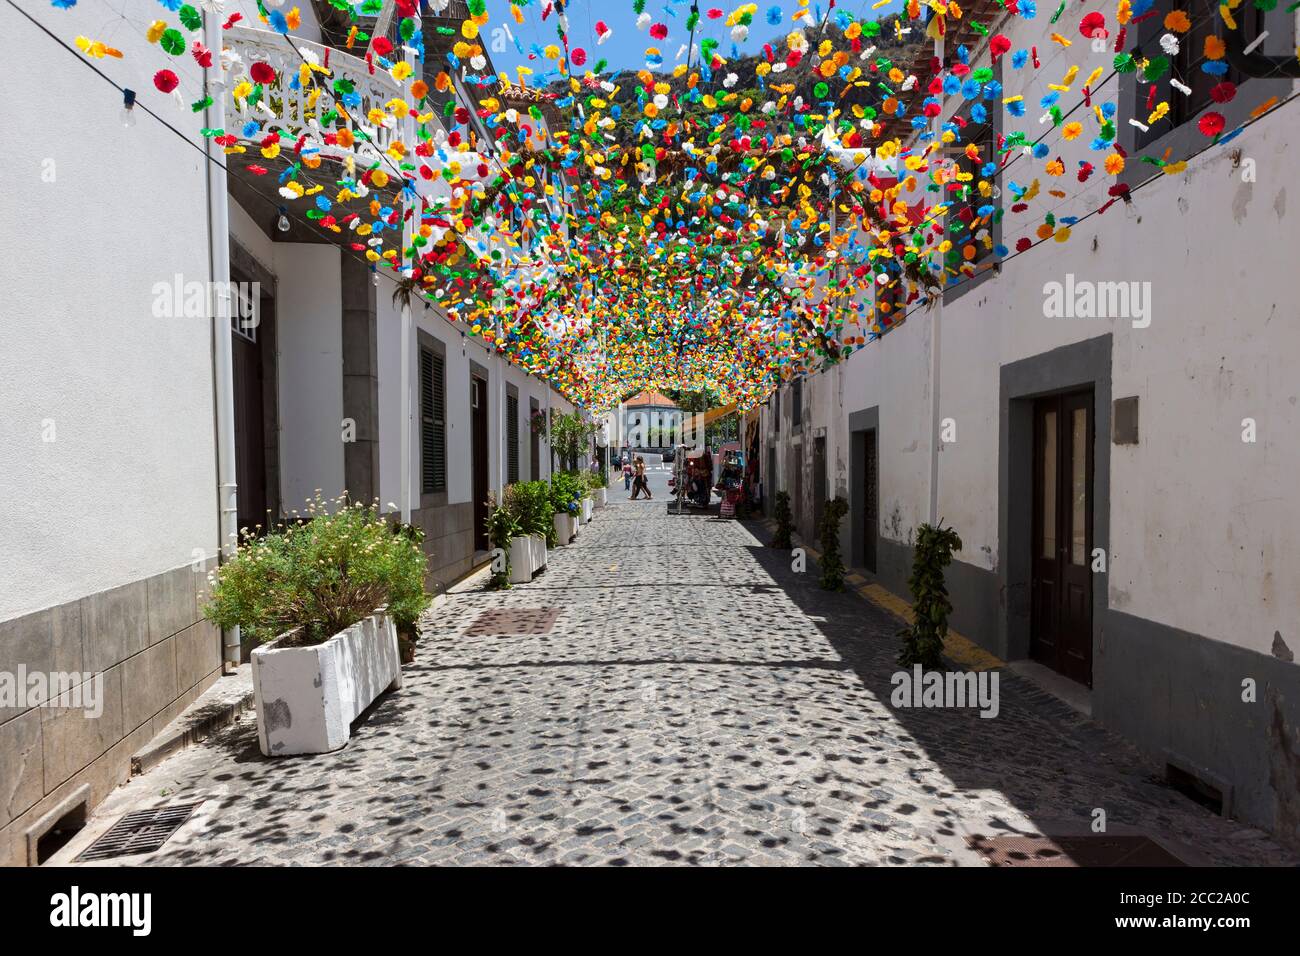 Calles decoradas fotografías e imágenes de alta resolución - Alamy